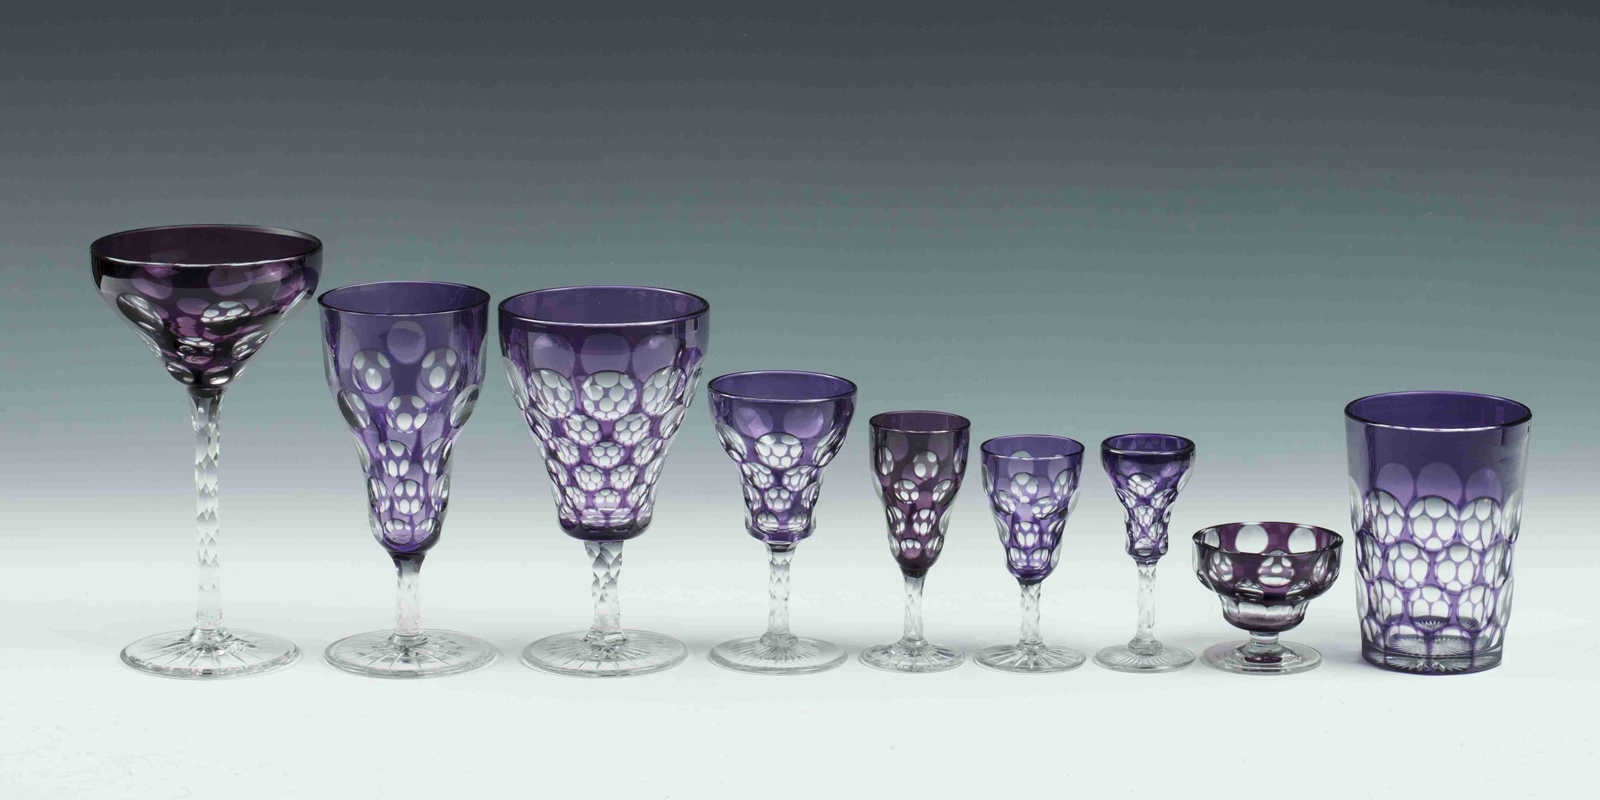 Purple glassware, acc. no. 23.399